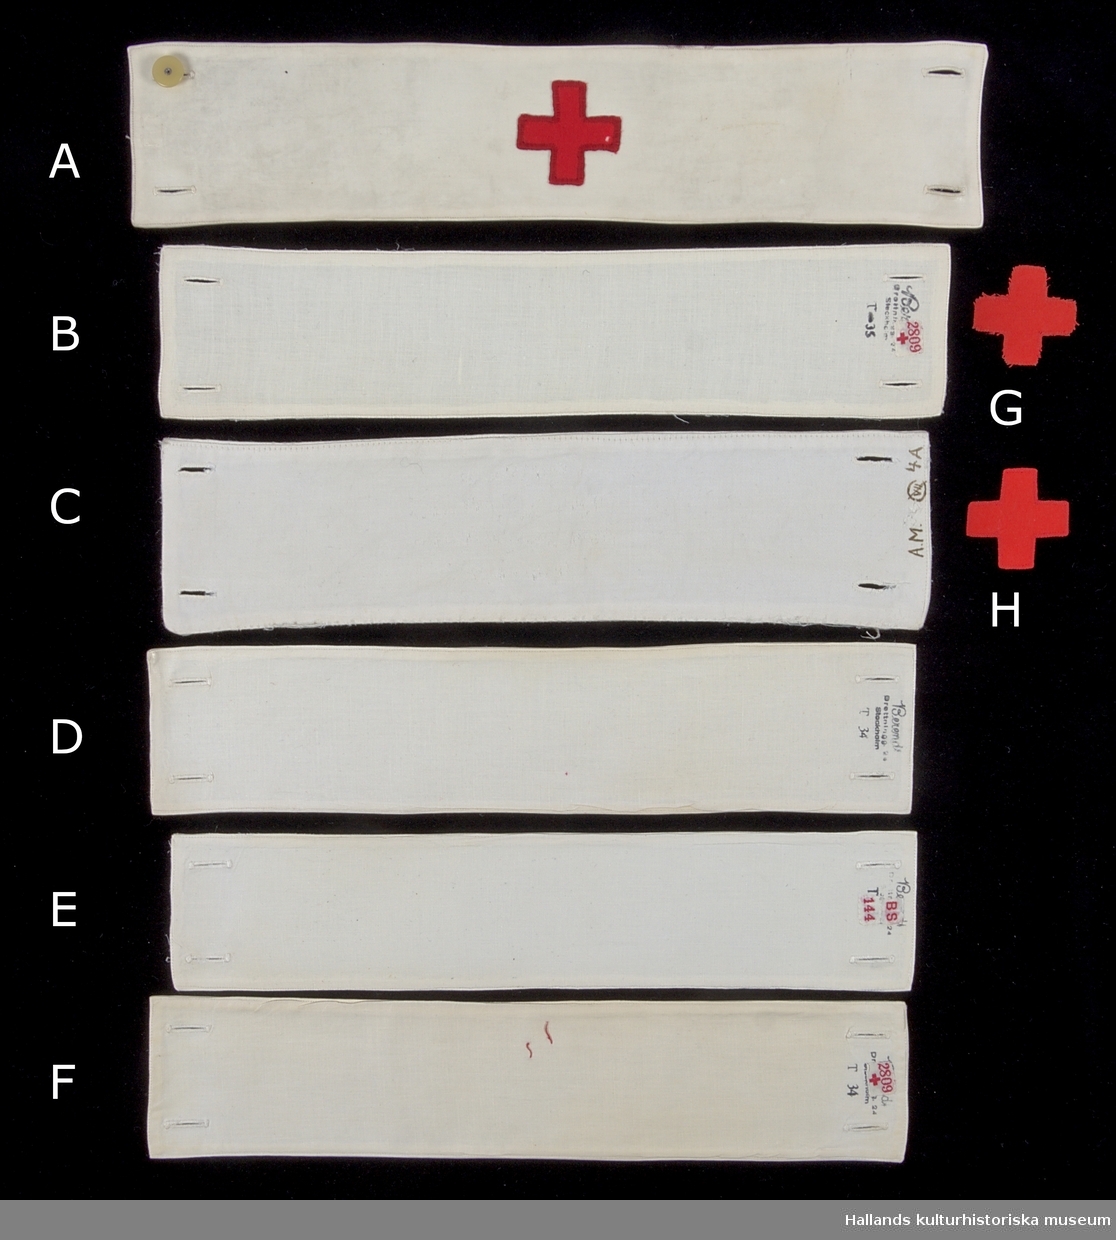 Samling av armbindlar tillhörande sjuksköterska.

A: Armbindel av fodrad vit bomullsväv. Manglad och stärkt. Armbindeln bär Röda Korsets symbol i rött bomullstyg. Hålls ihop med två manschettknappar, varav den ena saknas. På avigsidan finns en etikett med röd text: "2809" åtföljt av ett rött kors. Bredvid etiketten en tillverkarstämpel i svart bläck (se foto)
Längd: 375 mm. Höjd: 77 mm.

B: Armbindel av fodrad vit bomullsväv. Manglad och stärkt. Två förstärkta hål på vardera kortsida för manschettknappar. På avigsidan finns en etikett med röd text: "2809" åtföljt av ett rött kors. Bredvid etiketten en tillverkarstämpel i svart bläck (se foto), samt "T-35".
Längd: 350 mm. Höjd: 74 mm.

C: Armbindel av fodrad vit bomullsväv. Manglad och stärkt. Två knapphål på vardera kortsida.. Märkt med bläck längs ena kortsidan: "A.M. 4.A" samt en figur som består av tecknen "VII" omgärdat av en överstruken ring. 
Längd: 345 mm. Höjd: 85 mm.

D: Armbindel av fodrad vit bomullsväv. Manglad och stärkt. Två knapphål på vardera kortsida. Längs en av kortsidorna finns en tillverkarstämpel samt texten: "T 34". 
Längd: 345 mm. Höjd 77 mm.

E: Armbindel av fodrad vit bomullsväv. Manglad och stärkt. Två knapphål på vardera kortsida. På en av kortsidorna en svårtydd tillverkarstämpel med svart bläck; ovanför stämpel sitter en etikett med röd text: "BS 144". 
Längd: 340 mm. Höjd: 73 mm.

F: Armbindel av fodrad vit bomullsväv. Manglad och stärkt. Två knapphål på vardera kortsida. I mitten av armbandet finns rester av röd tråd vilket troligtvis är ett spår efter ett tygmärke. På en av avigsidorna en etikett med röd text: "2809" åtföljt av ett rött kors. Under etiketten en tillverkarstämpel i svart bläck (se foto), samt "T 34". 
Längd: 345. Höjd: 72 mm.

G: Tygmärke av röd bomullsväv föreställande röda korsets symbol. Tygmärket saknar sömmar längs kanterna och är därmed fransigt - ofärdigställt. Tygmärket skall fästas i armbindel.
Längd: 45 mm. Höjd 45 mm.

H: Tygmärke av röd bomullsväv föreställande röda korsets symbol. Sömmar längs kanterna. Tygmärket skall fästas i armbindel.
Längd: 45 mm. Höjd 45 mm.